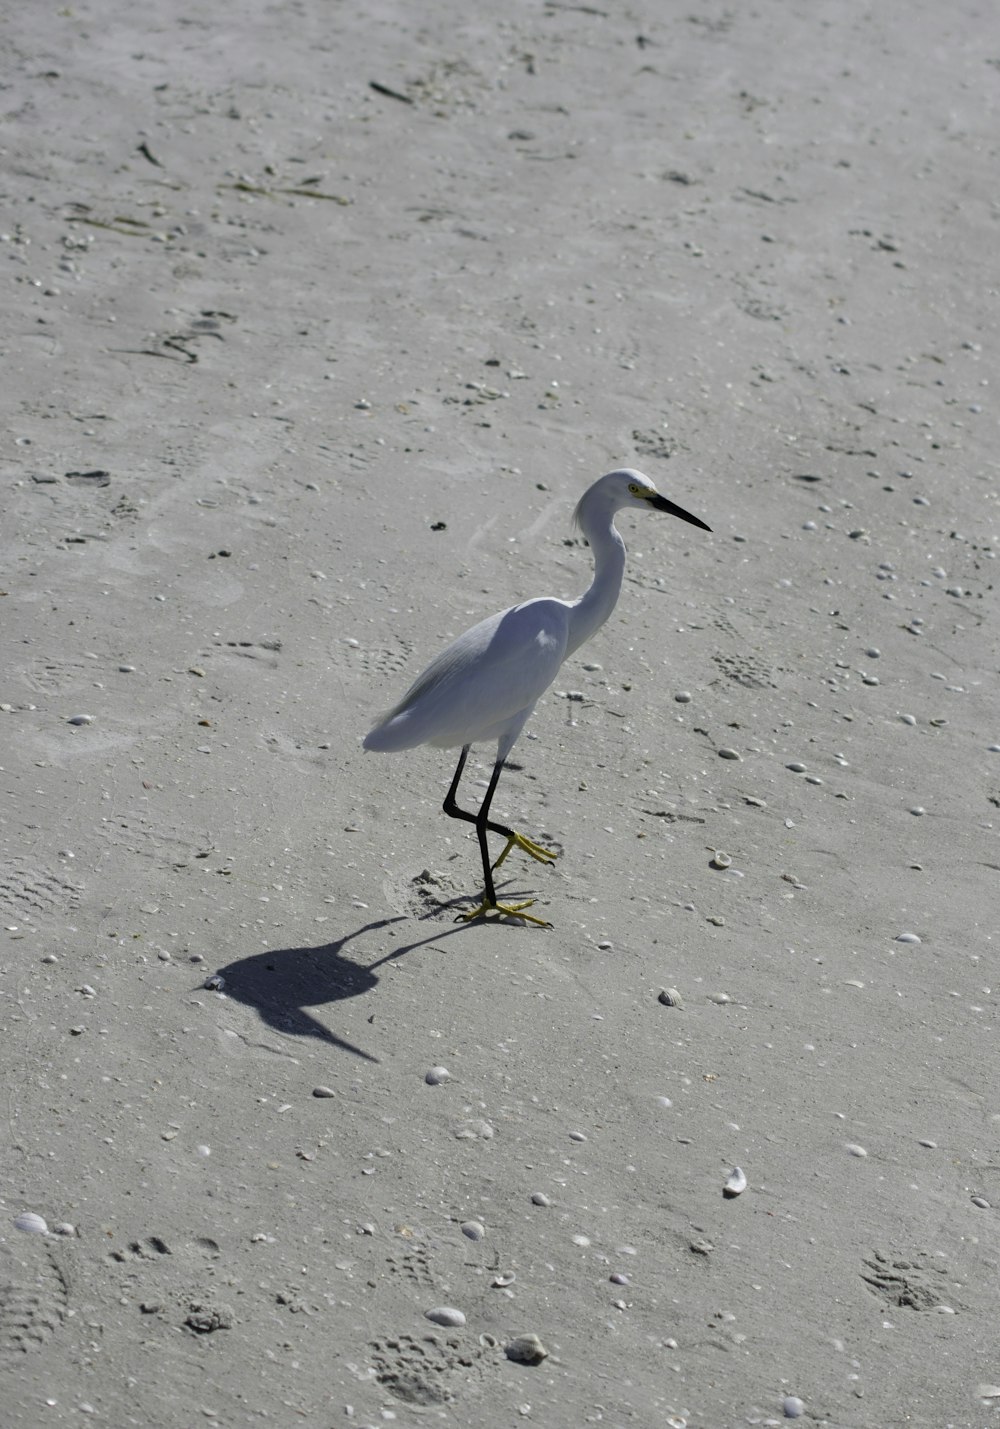 white long-beaked bird on sand